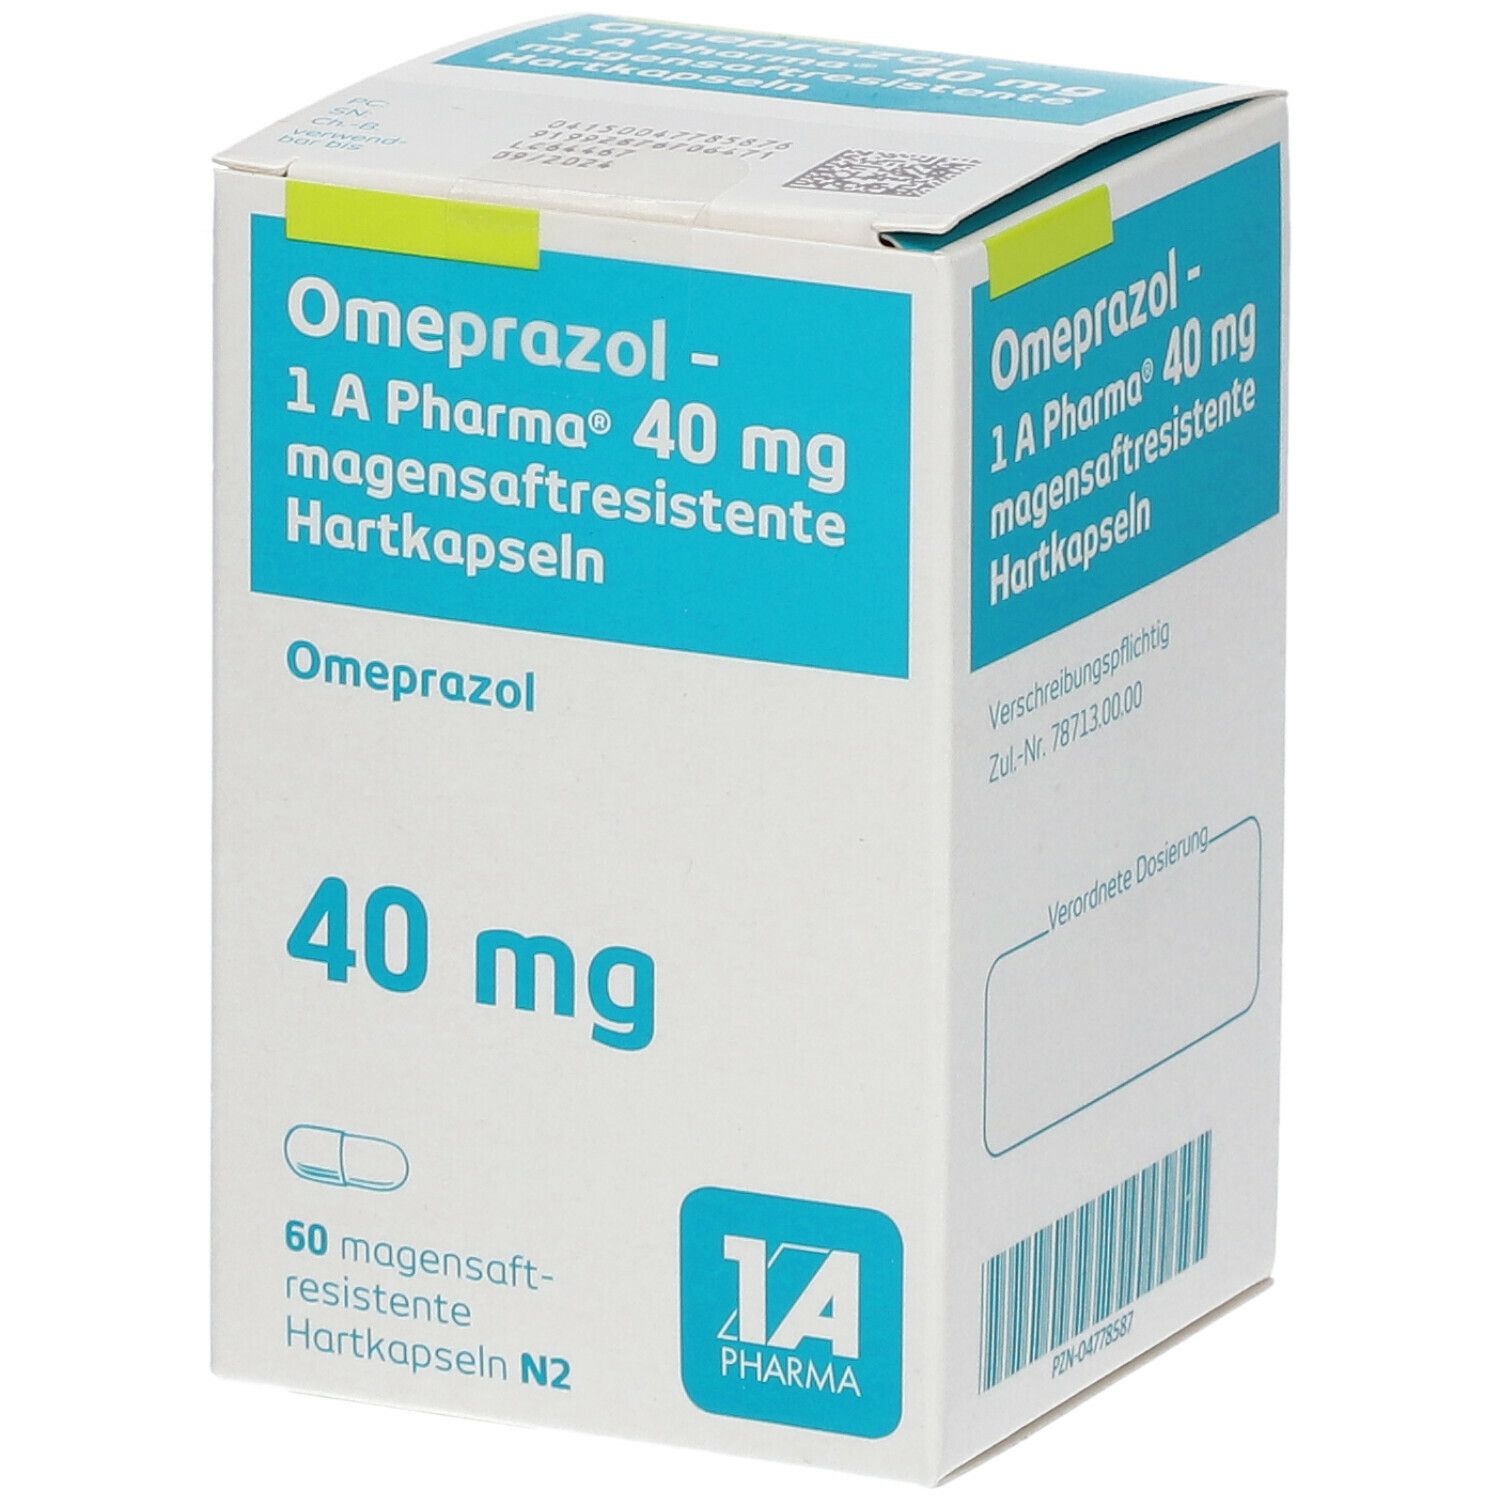 Omeprazol 40Mg 1A Pharma®